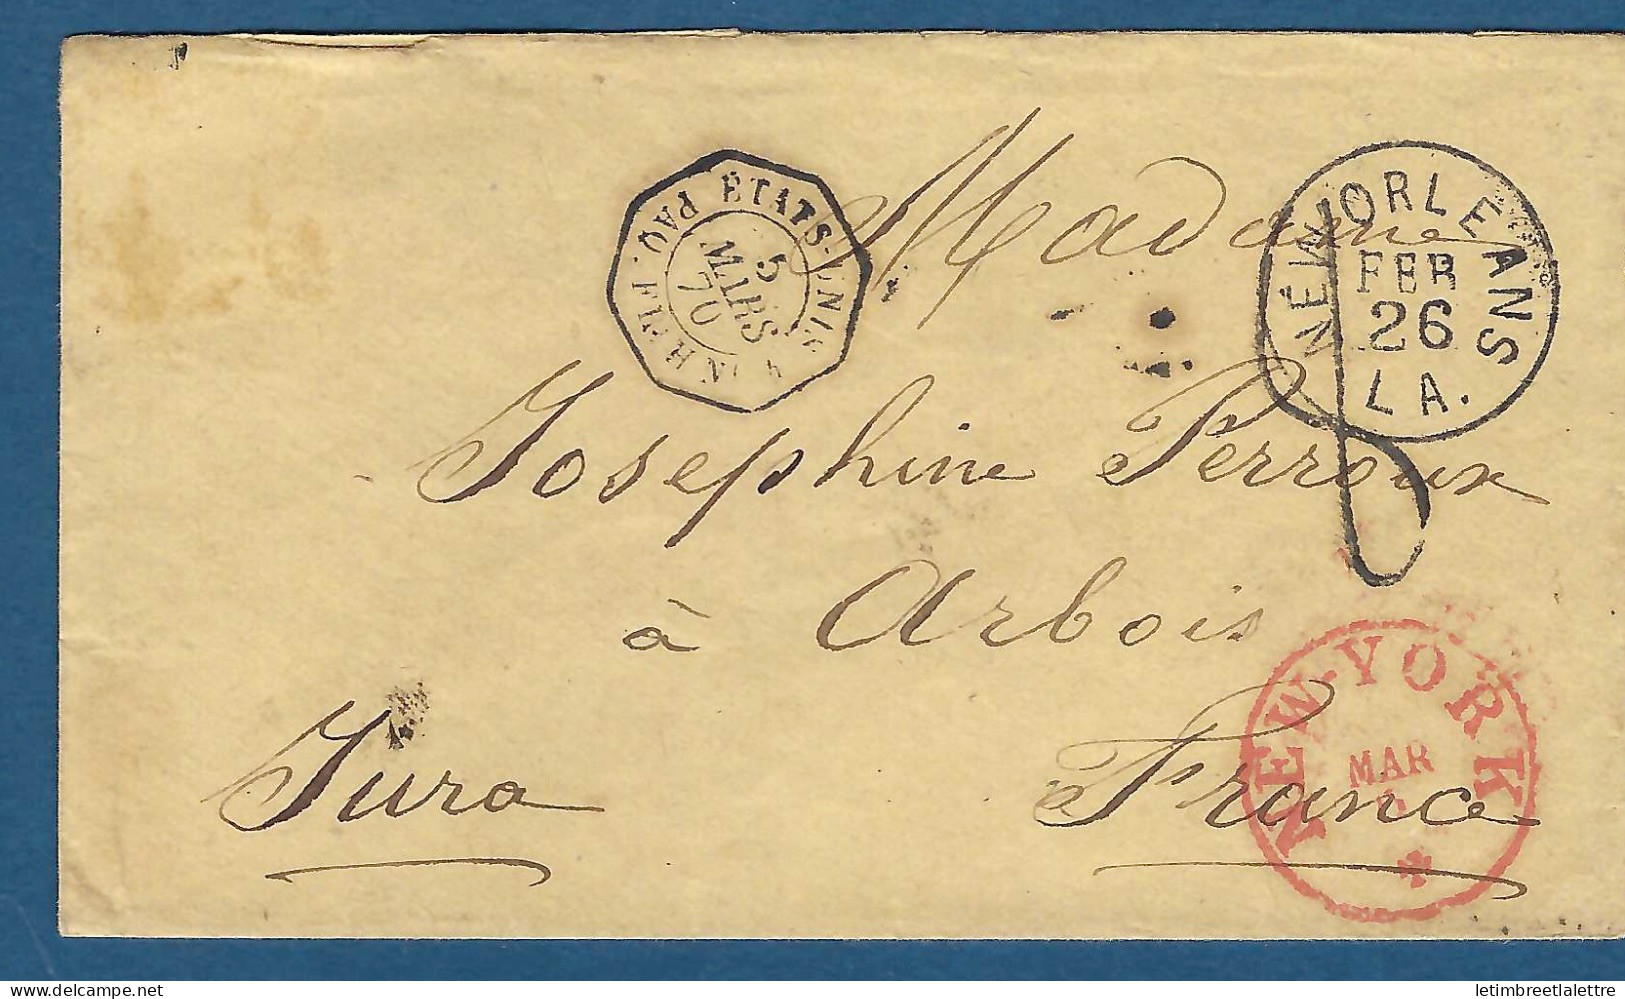 États Unis - USA Pour Le Jura - Cachet Rouge New York - 1870 - Storia Postale